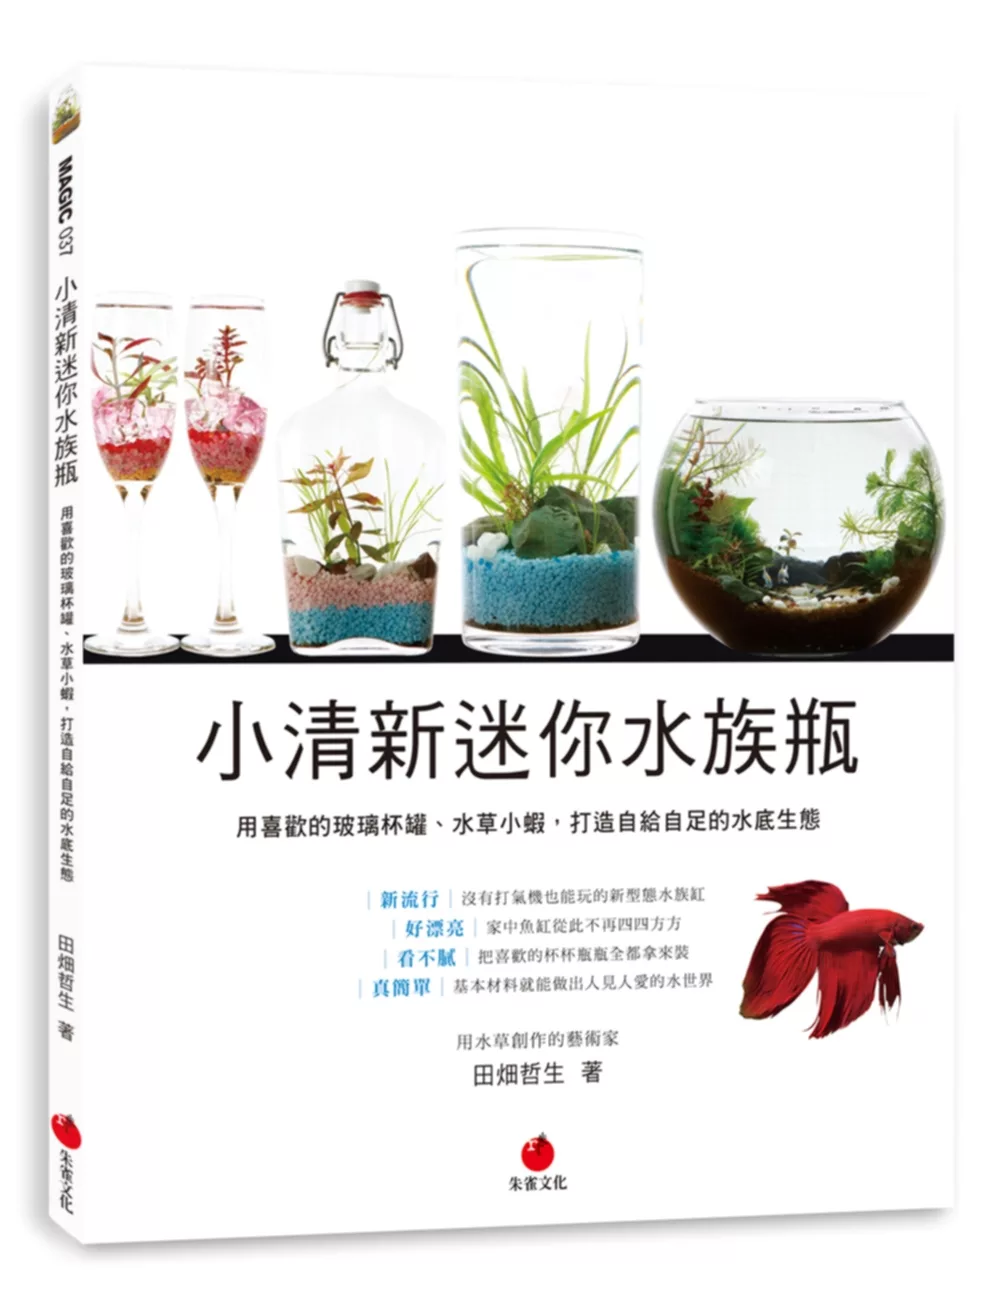 小清新迷你水族瓶：用喜歡的玻璃杯罐、水草小蝦，打造自給自足的水底生態